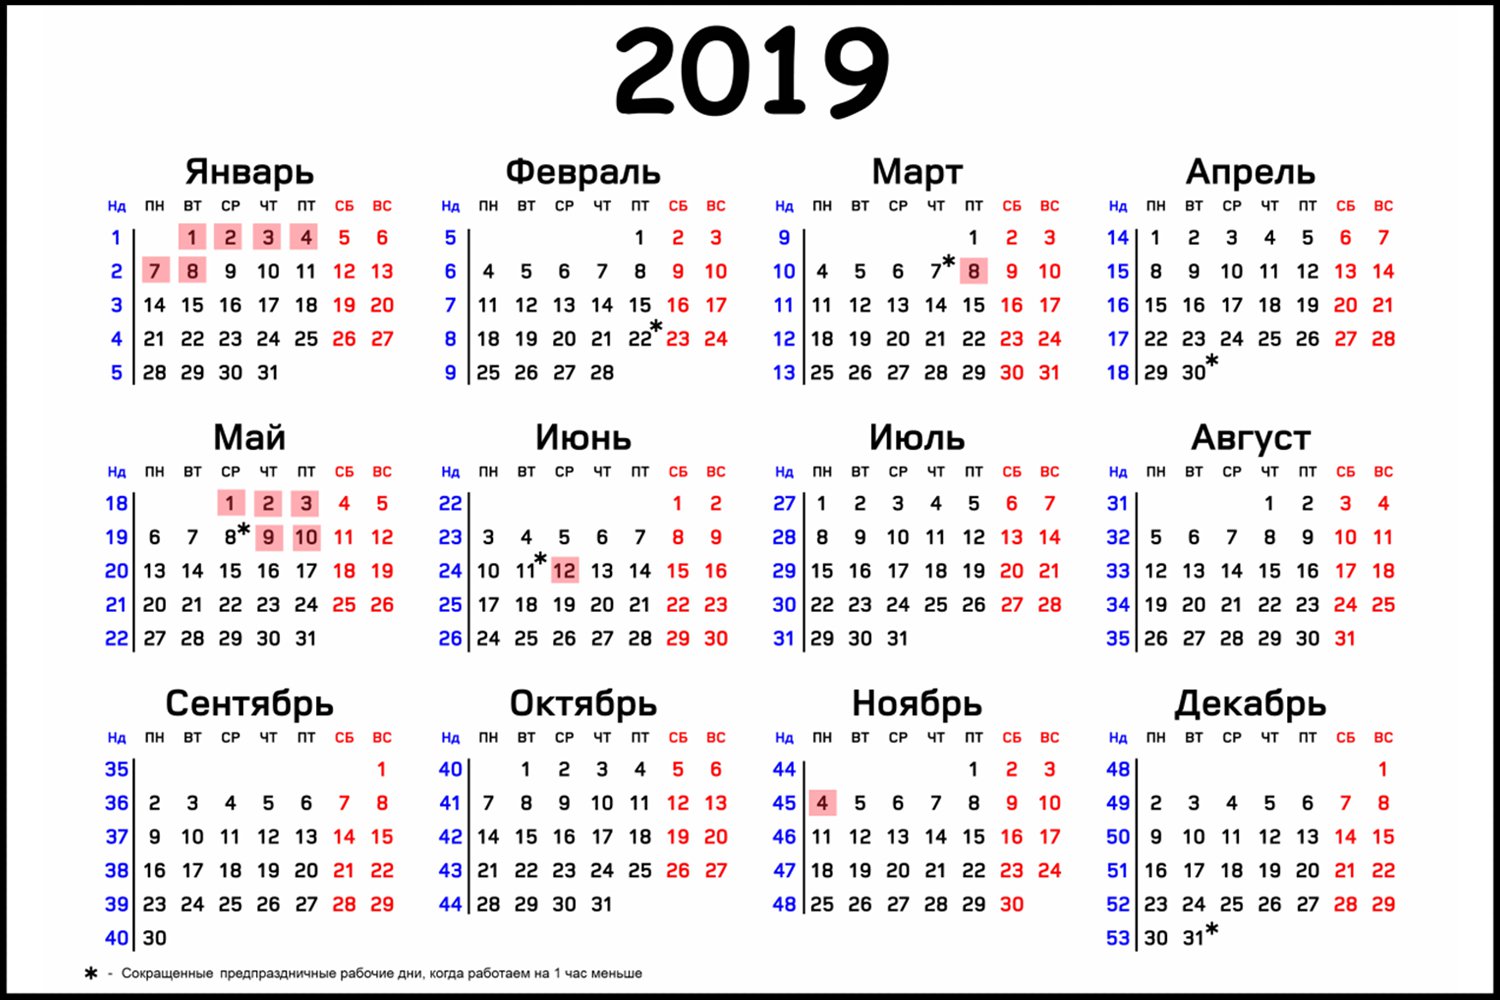 Утверждён календарь праздников и выходных в 2019 году